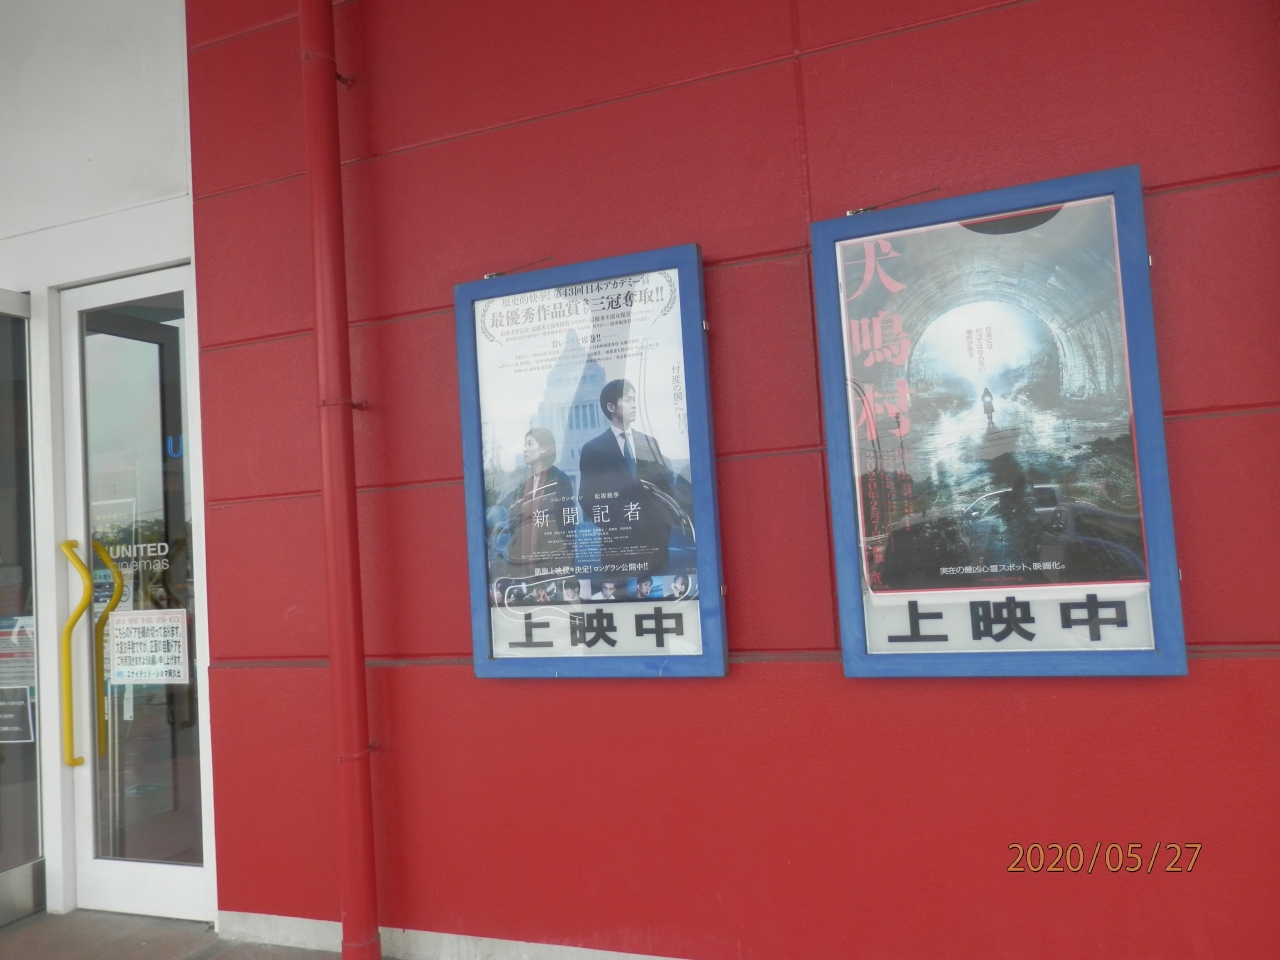 再開してる映画館に行く 知多 東浦 愛知県 の旅行記 ブログ By さいちゃんさん フォートラベル